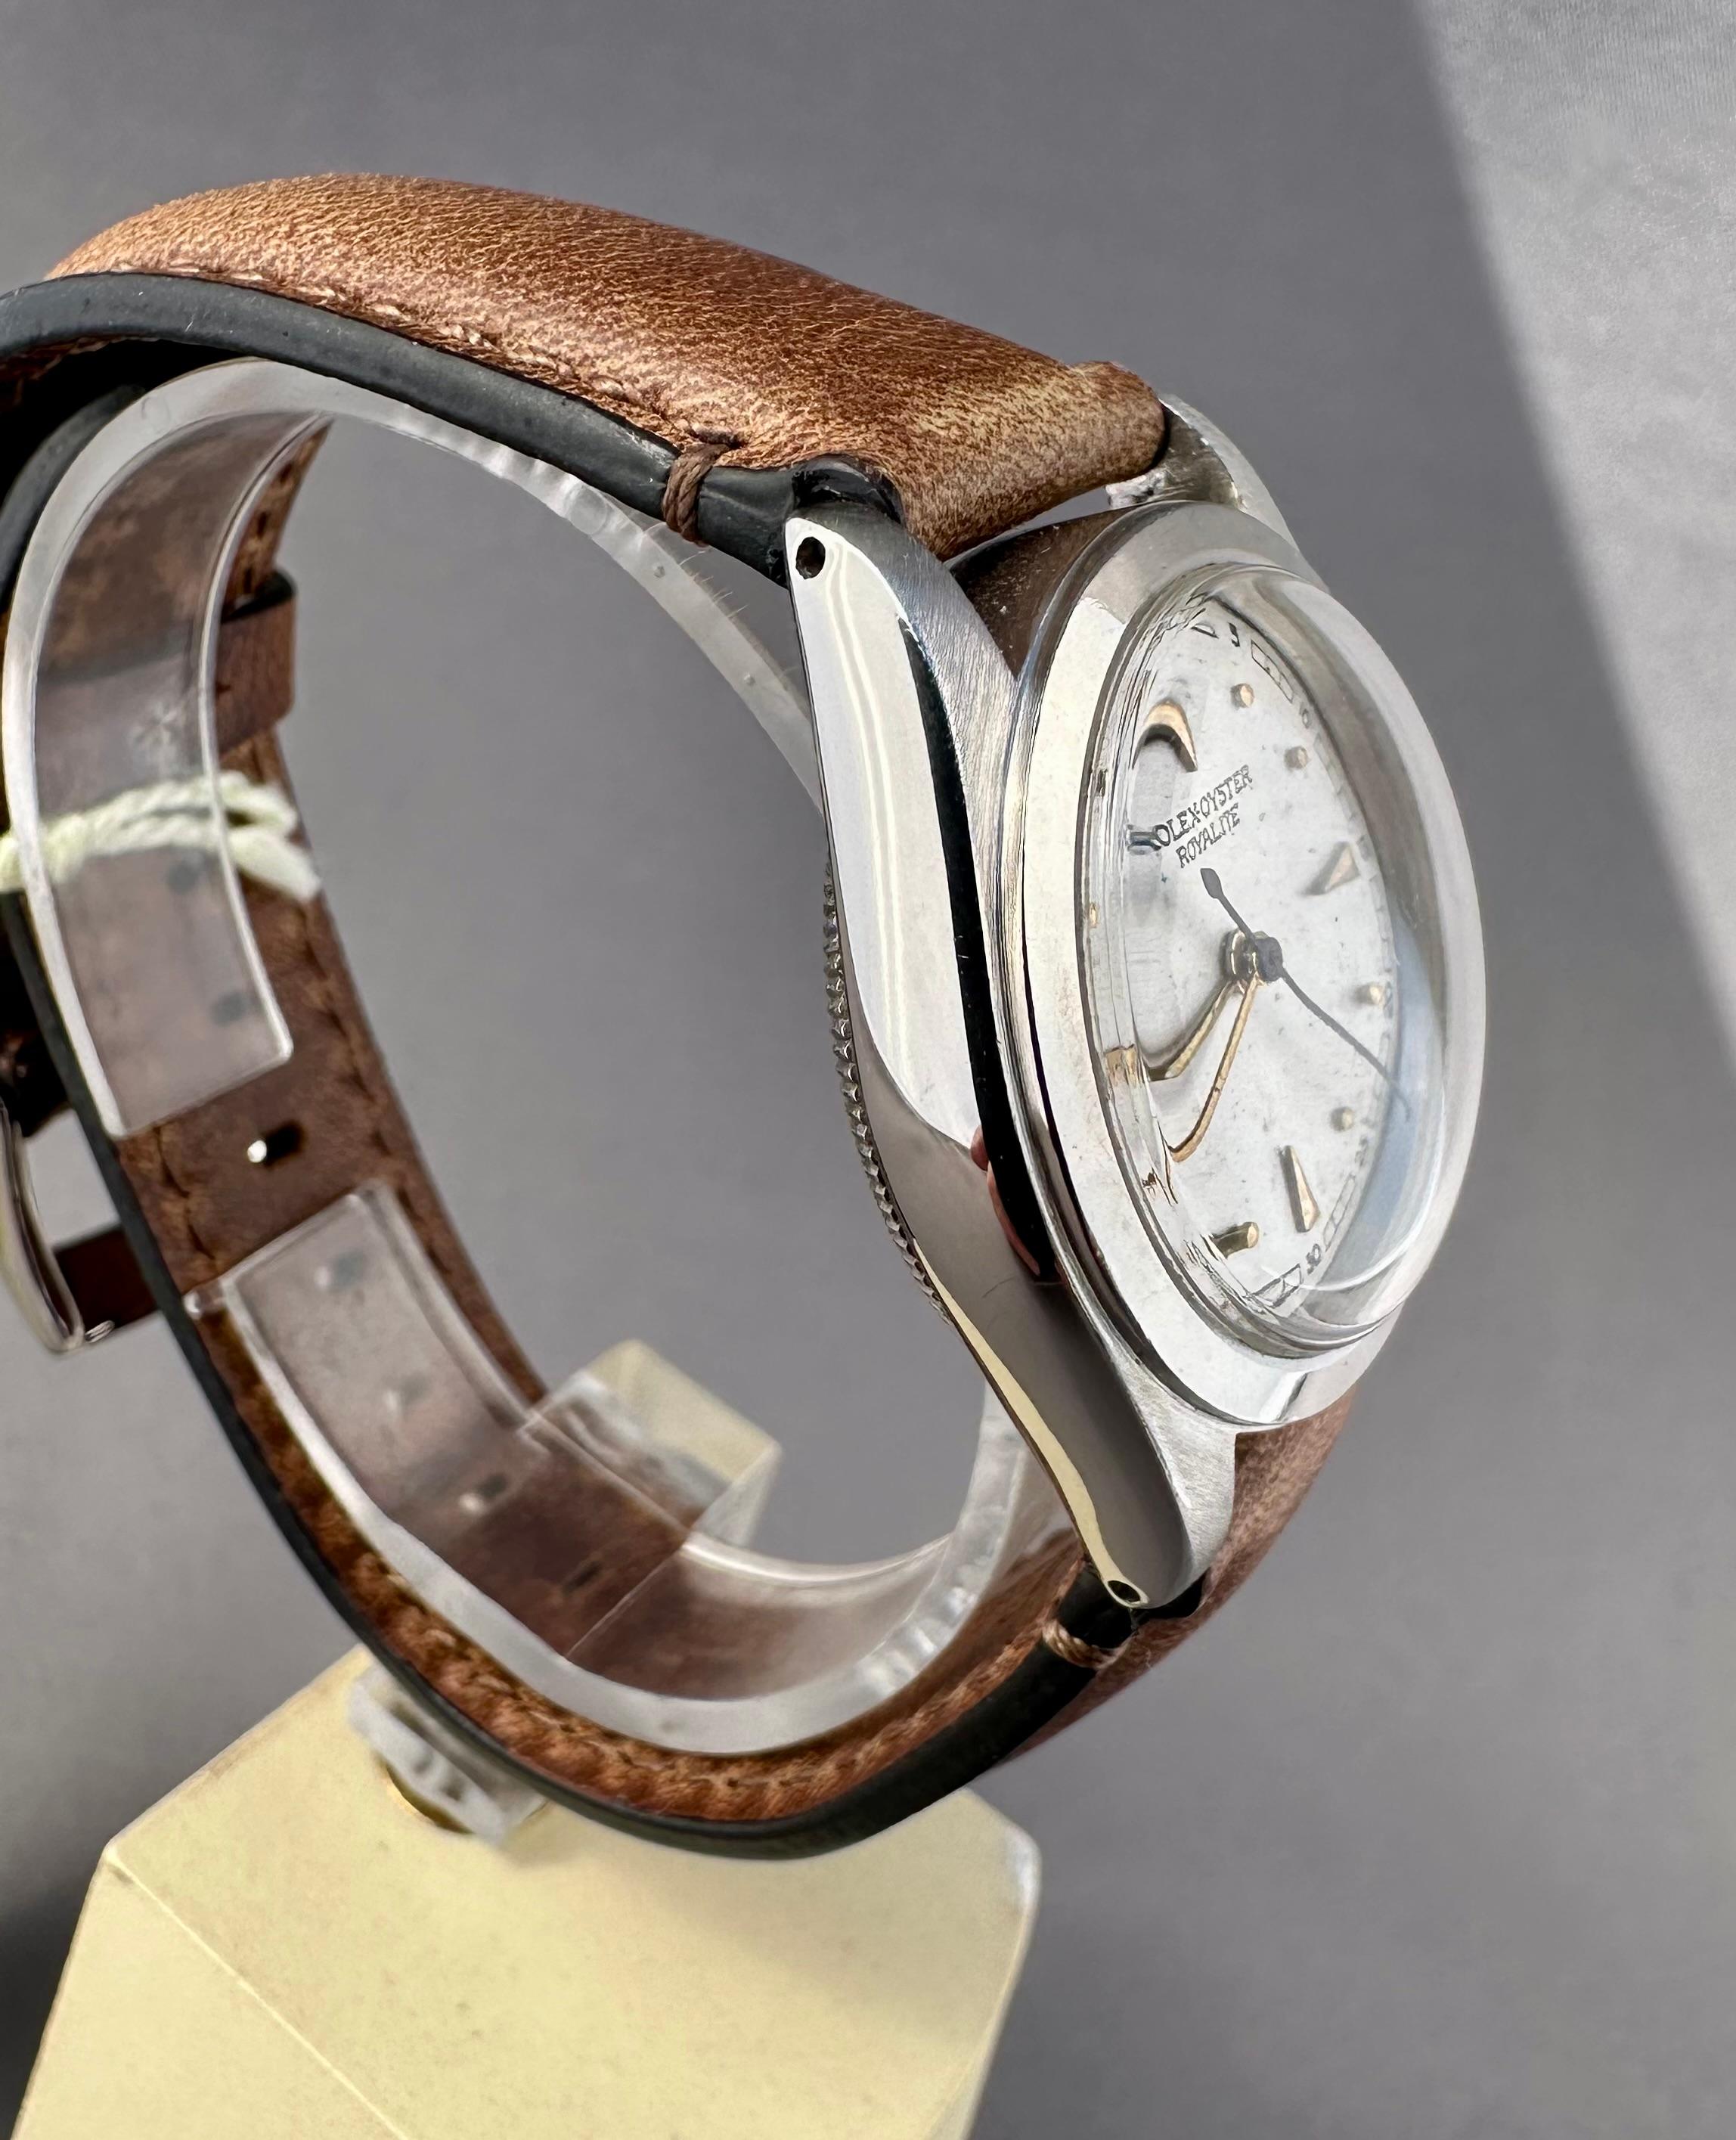 Rolex Royalit-Uhr 2280, Vintage, um 1939

Beschreibung / Zustand: Alle Uhren wurden professionell überprüft und gewartet, bevor sie zum Verkauf angeboten wurden. Dieses Modell wurde aus rostfreiem Stahl gefertigt und hat ein einteiliges Gehäuse und